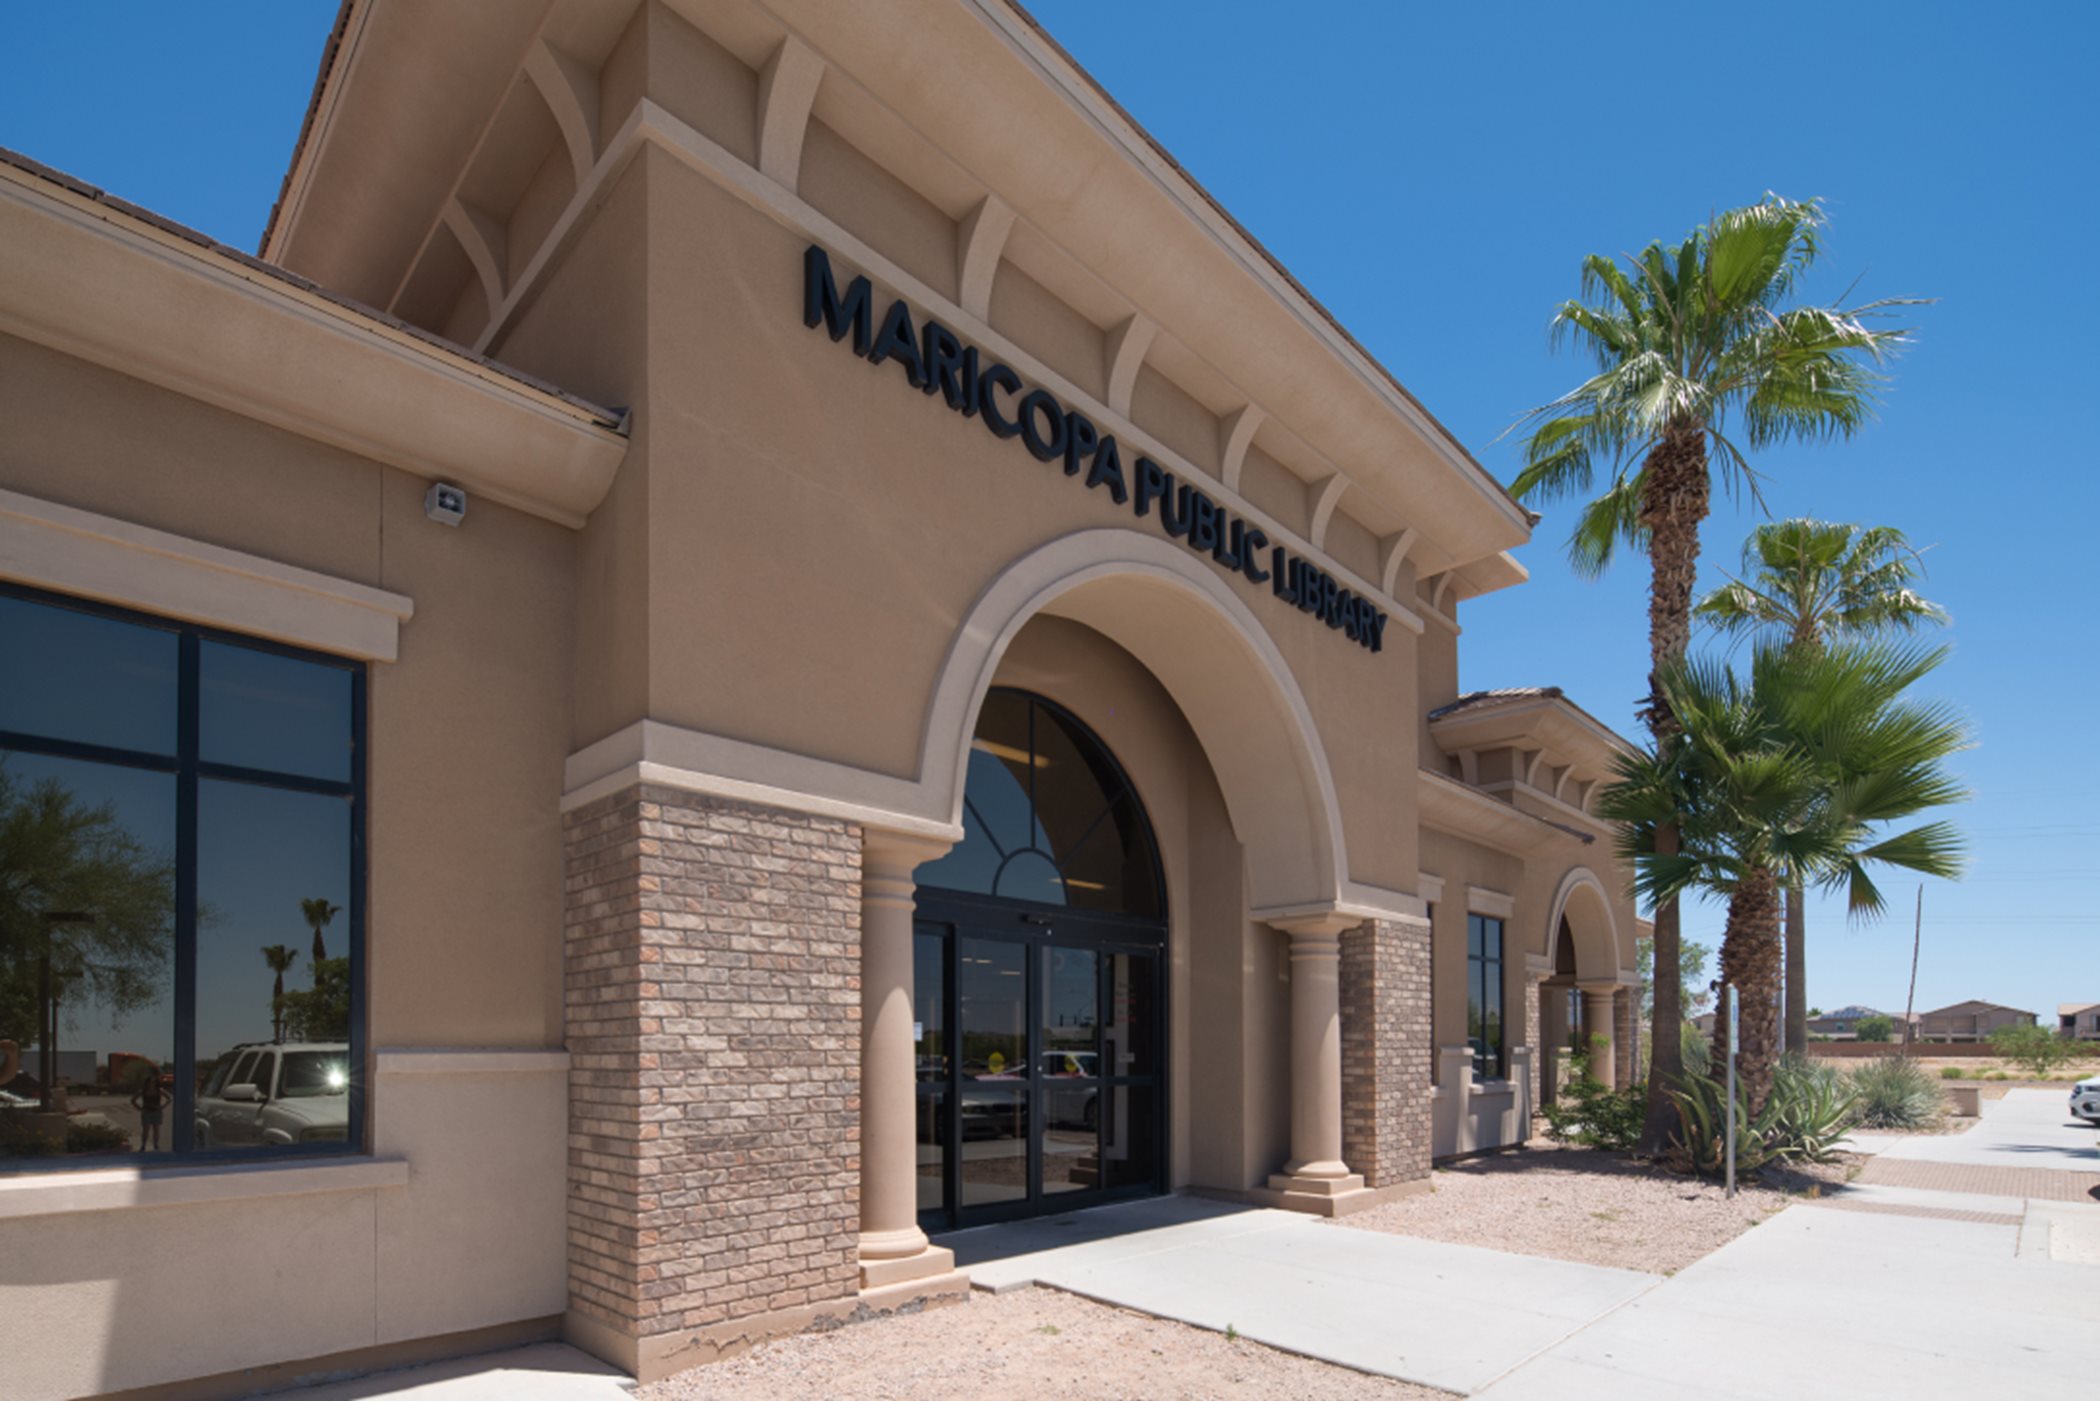 Maricopa Library entrance